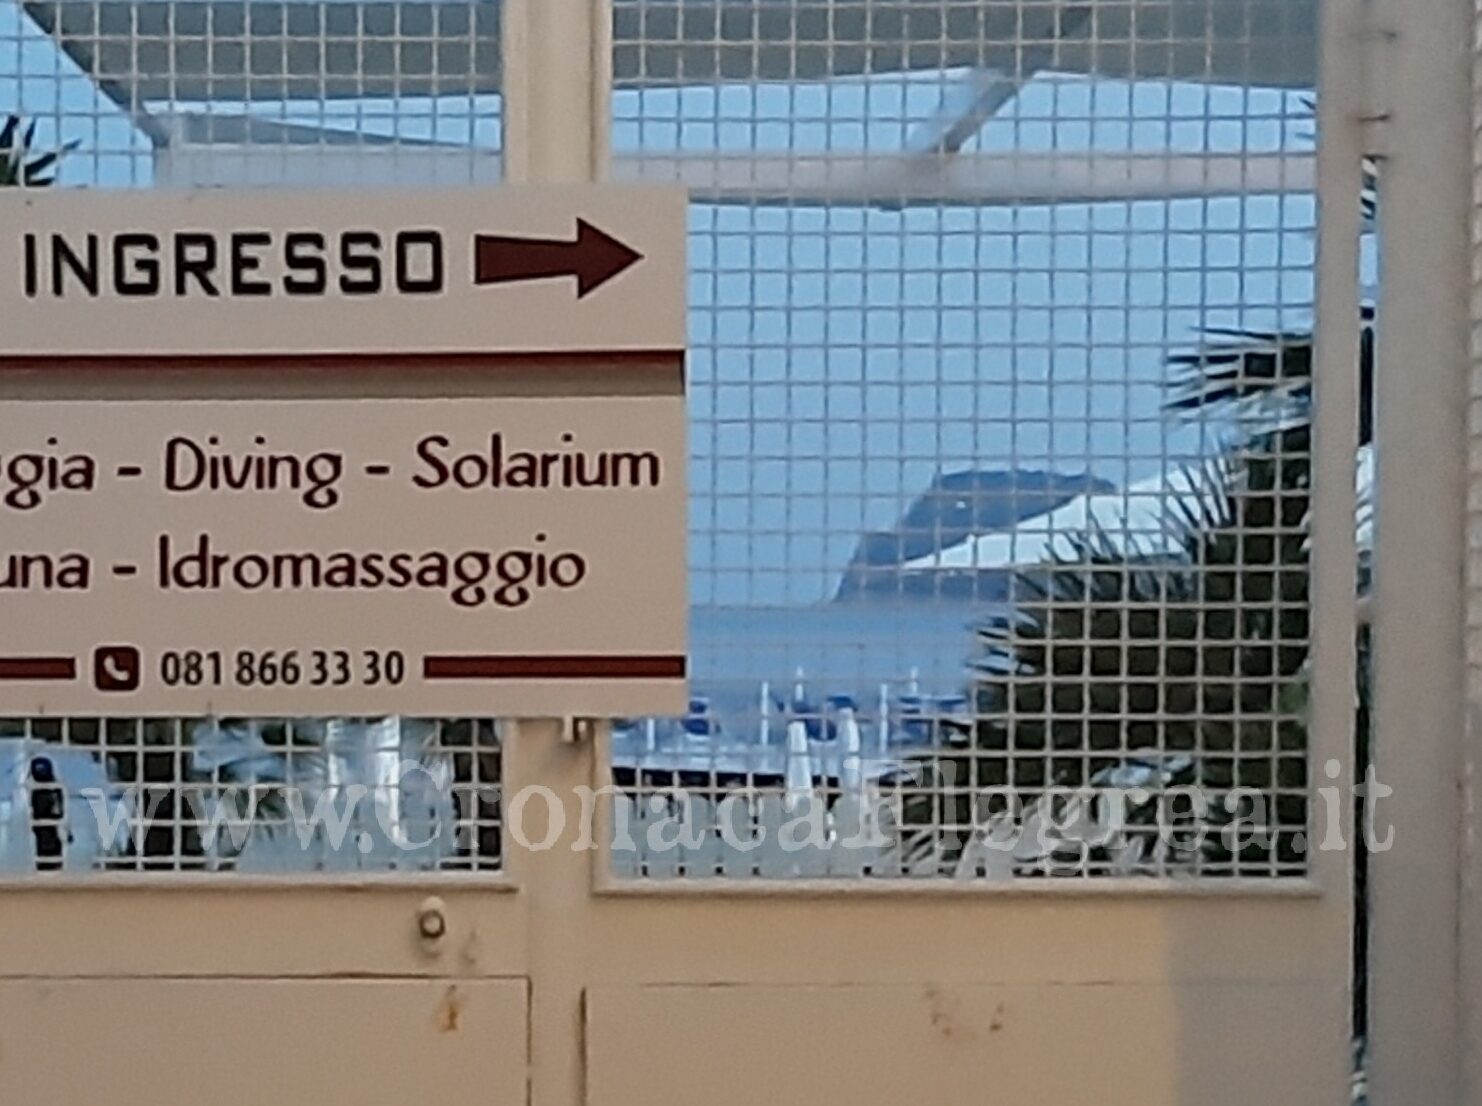 Libero accesso alle spiagge: assemblea in piazza a Pozzuoli